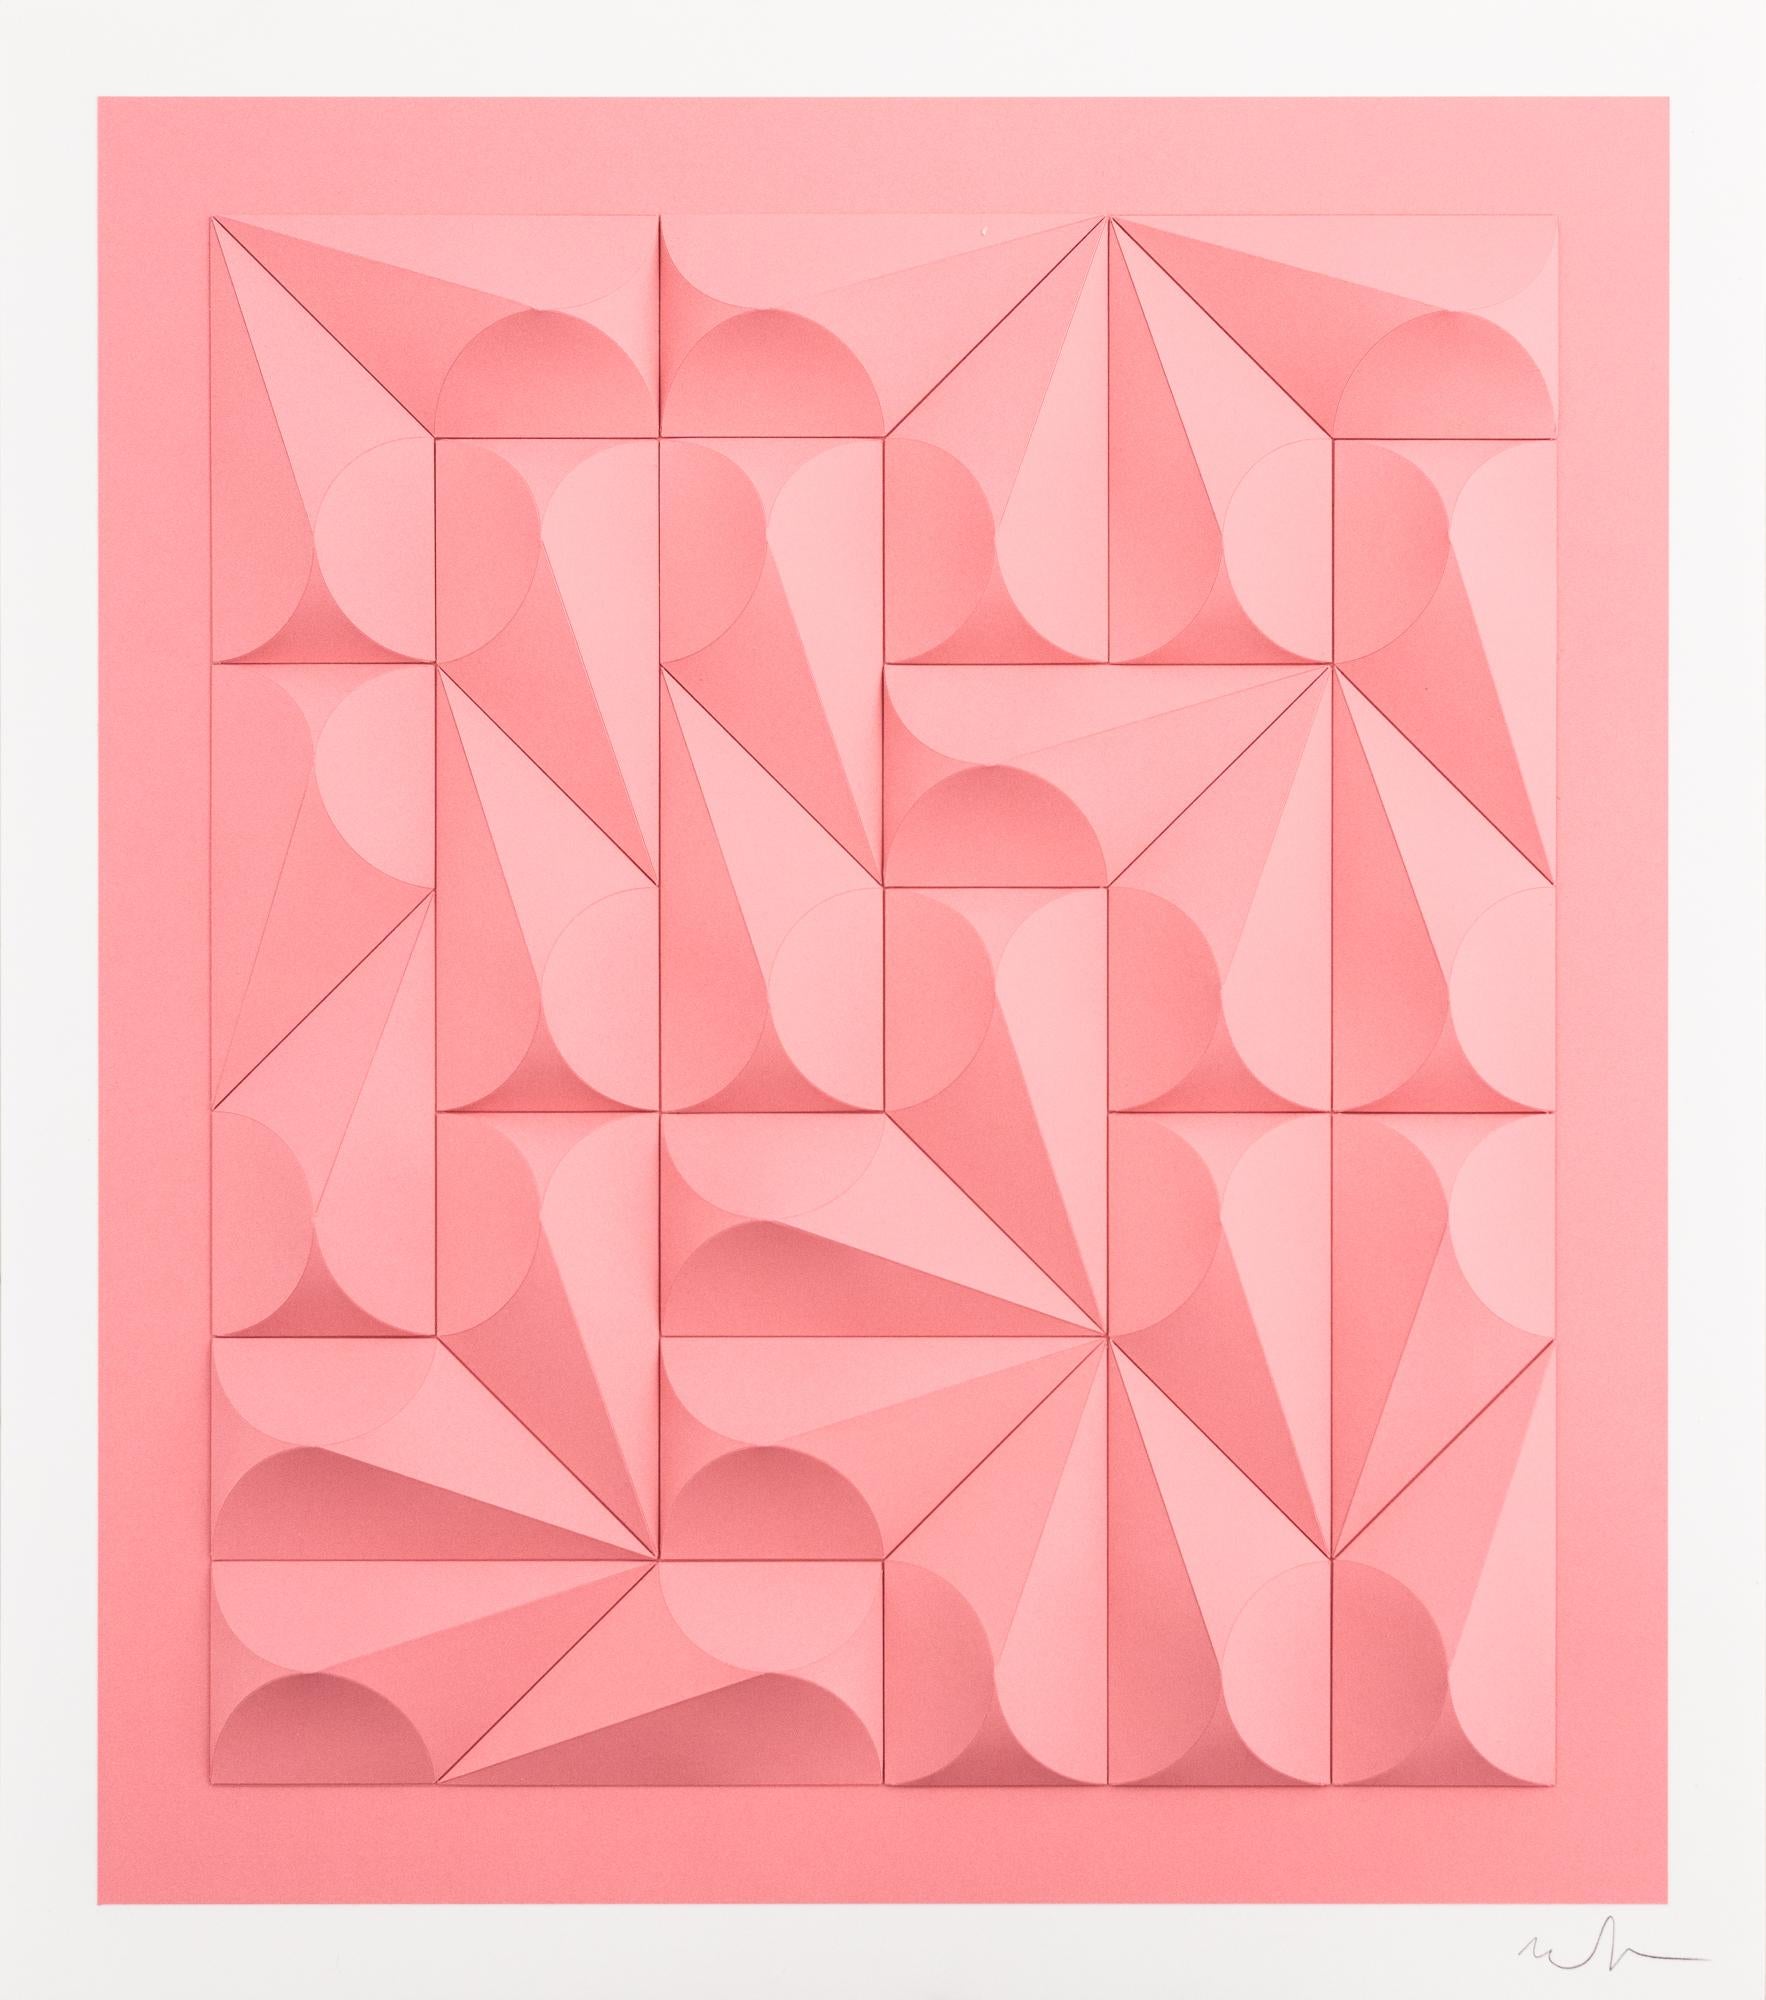 Matt Shlian Abstract Sculpture - "Omoplata 254 in Bubblegum", Hand-Folded Paper, Abstract Patterns